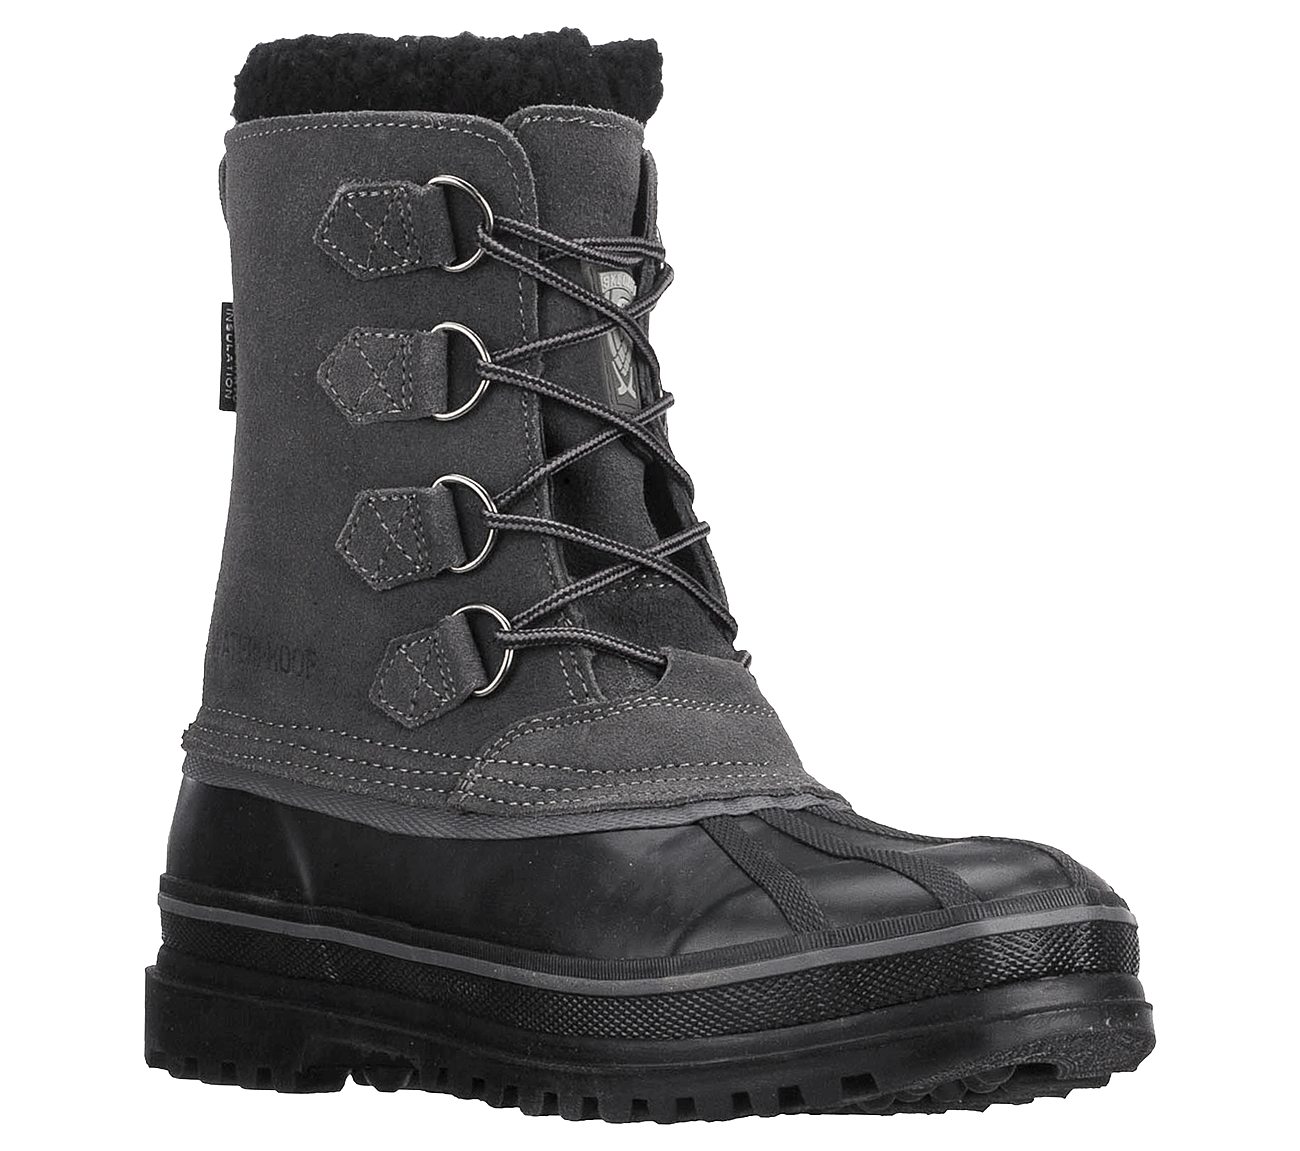 skechers men's snow boots